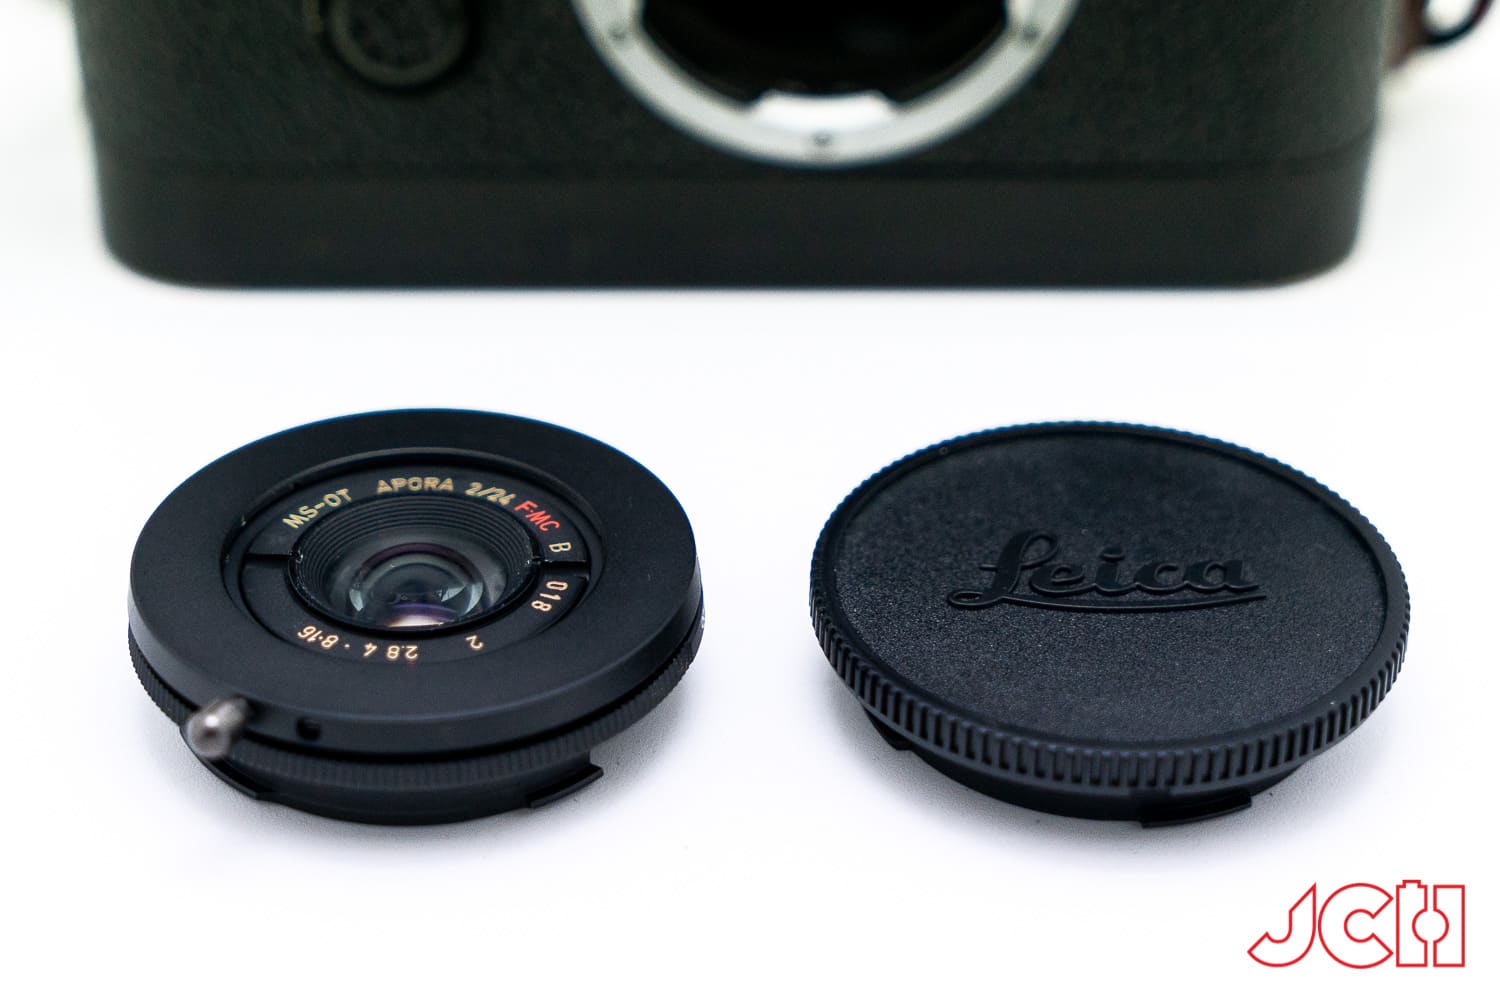 MS Optics Aporia 24mm F2, ống kính ngàm M chỉ nhỏ bằng một nắp che cảm biến máy ảnh